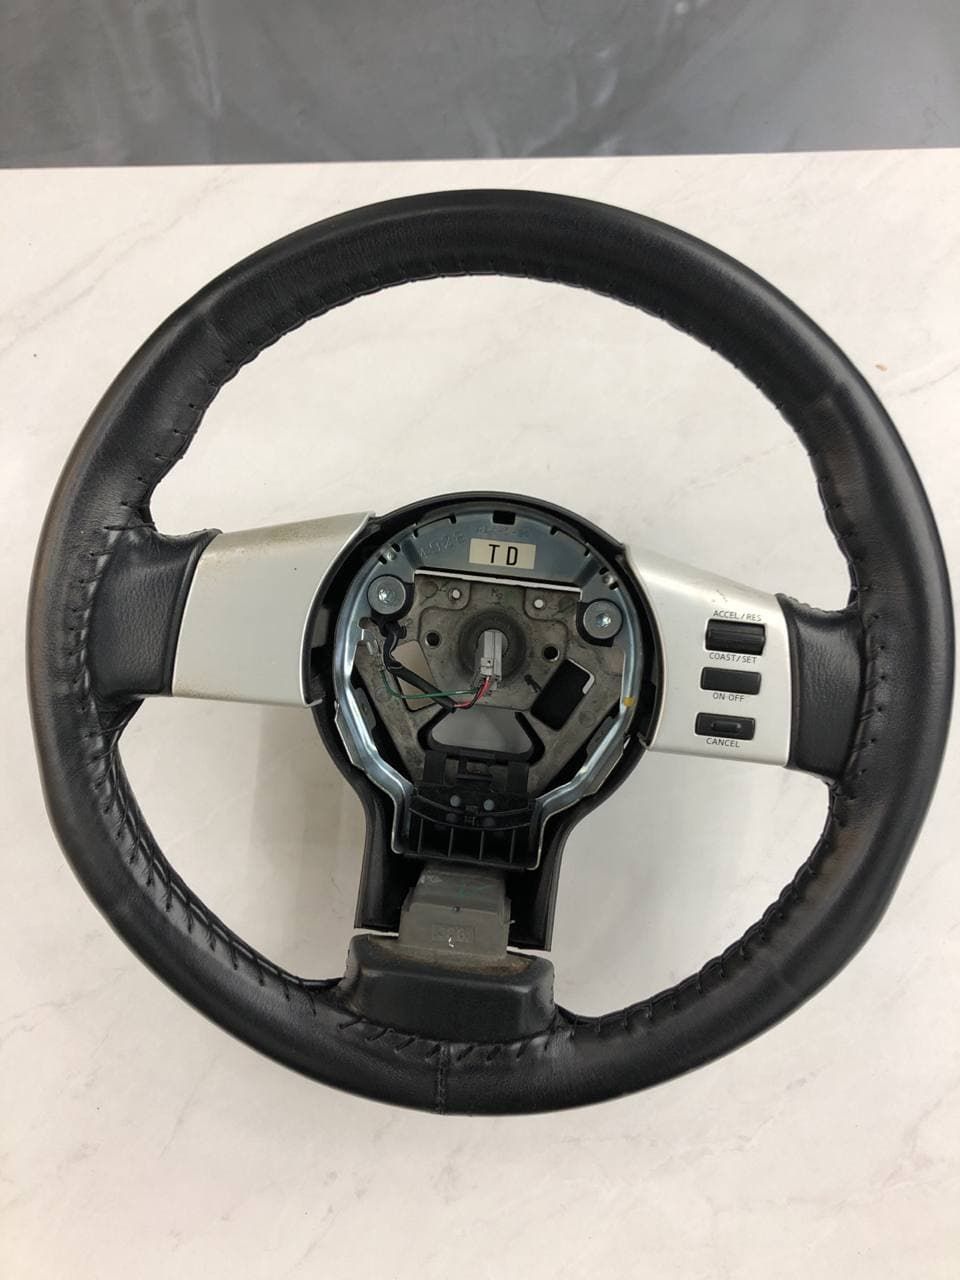 Nissan OEM steering Wheel w/ Sew on cover - Nissan 350Z Z33 03-05 (Scratch & Dent)